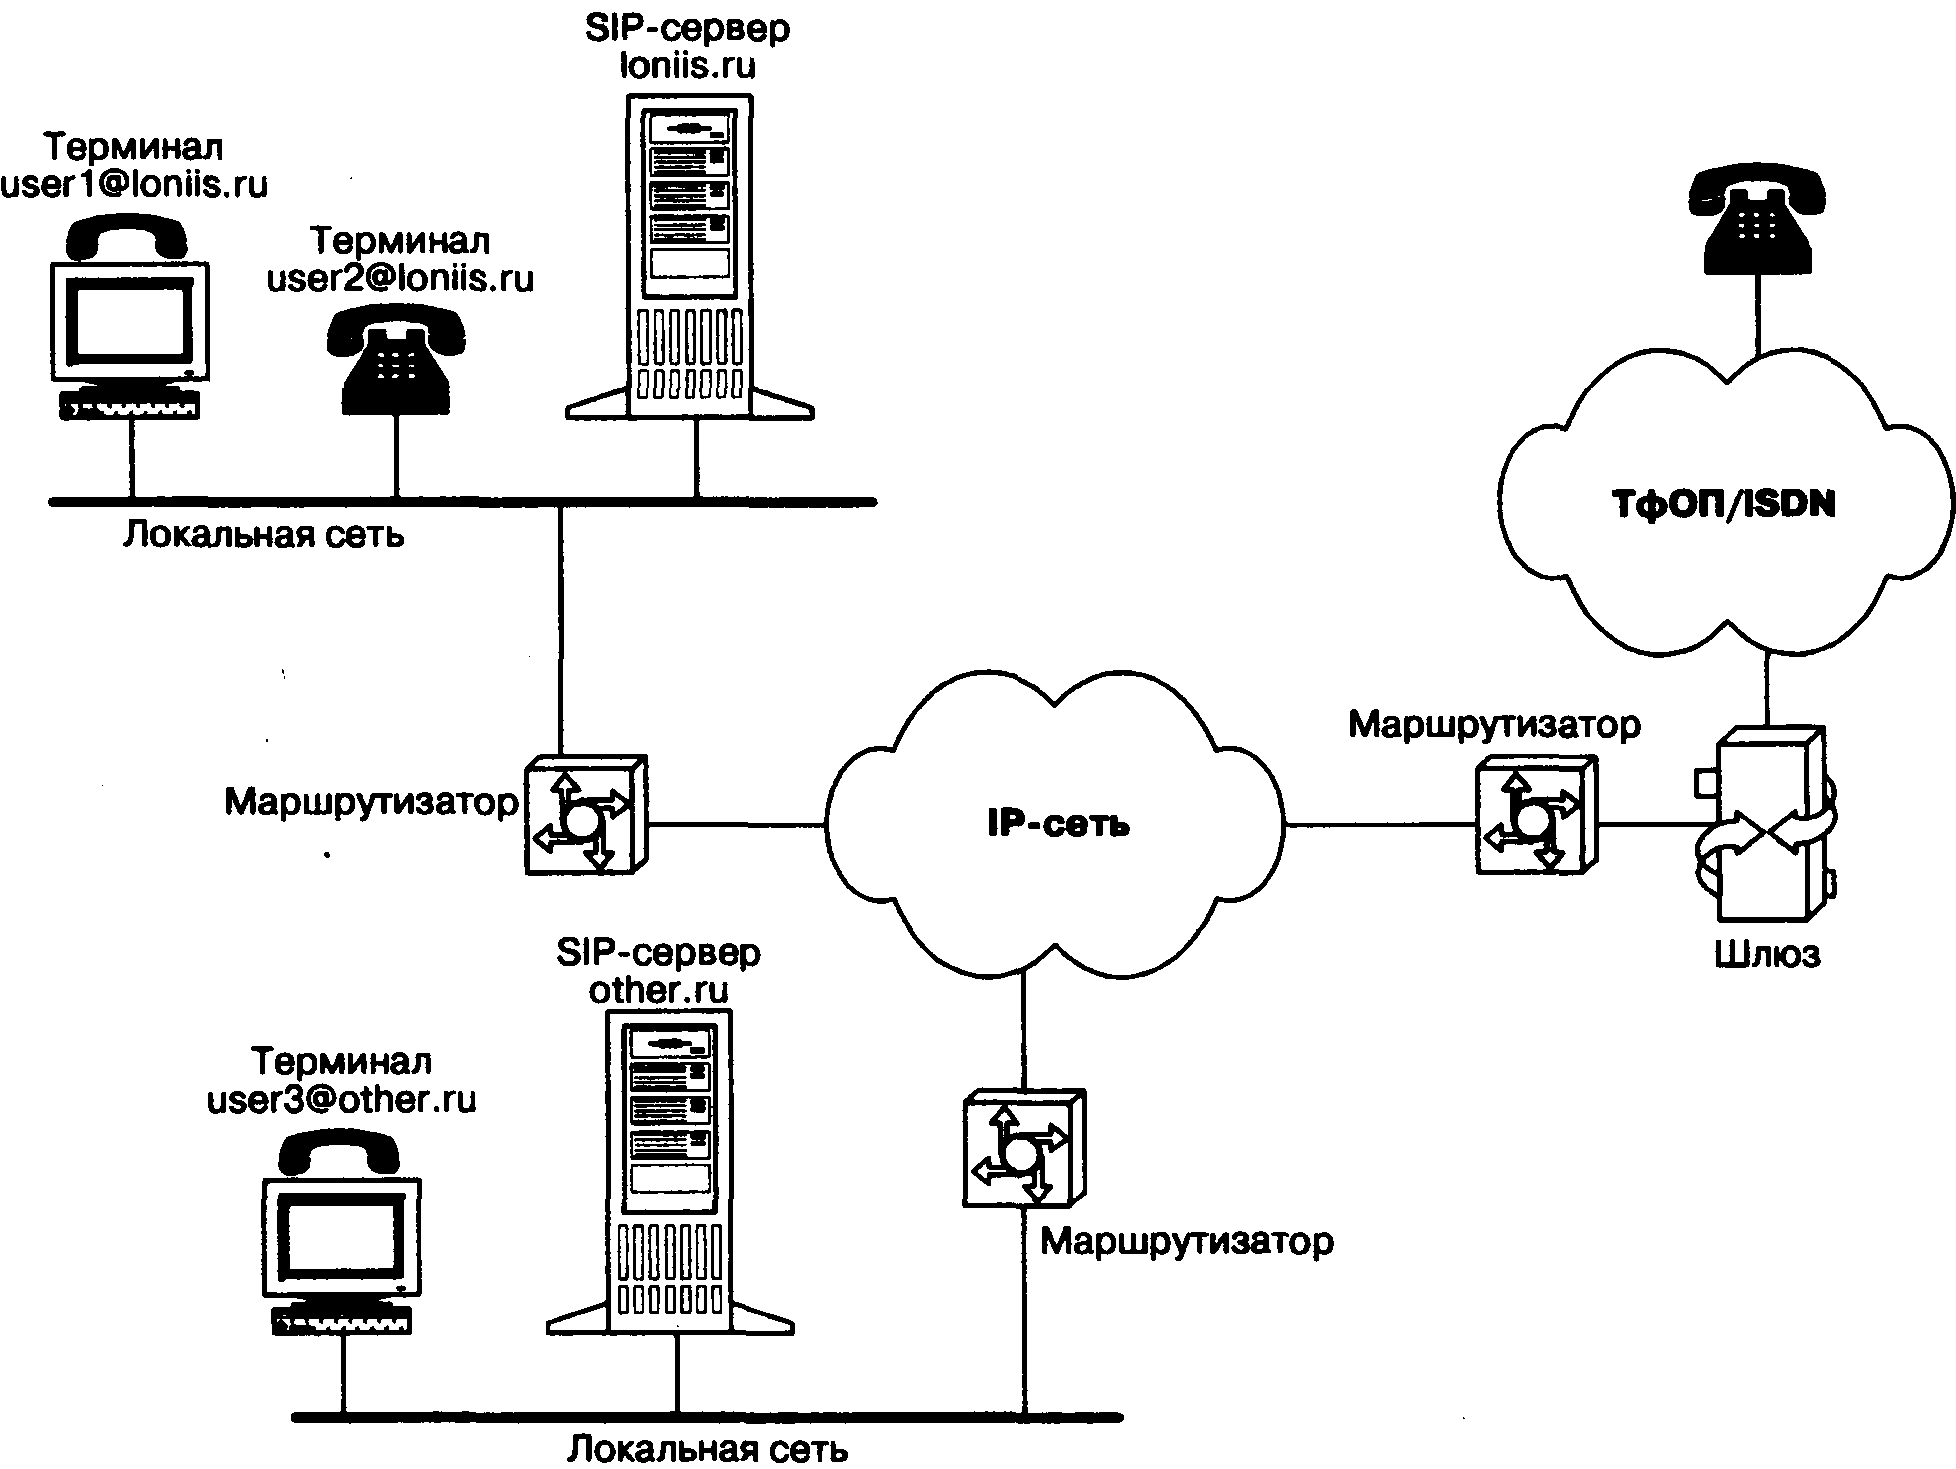 Протокол терминала. Структурная схема SIP телефонии. Схема сети SIP телефонии. Архитектура IP телефонии с протоколом SIP. Архитектура сети на базе протокола SIP.